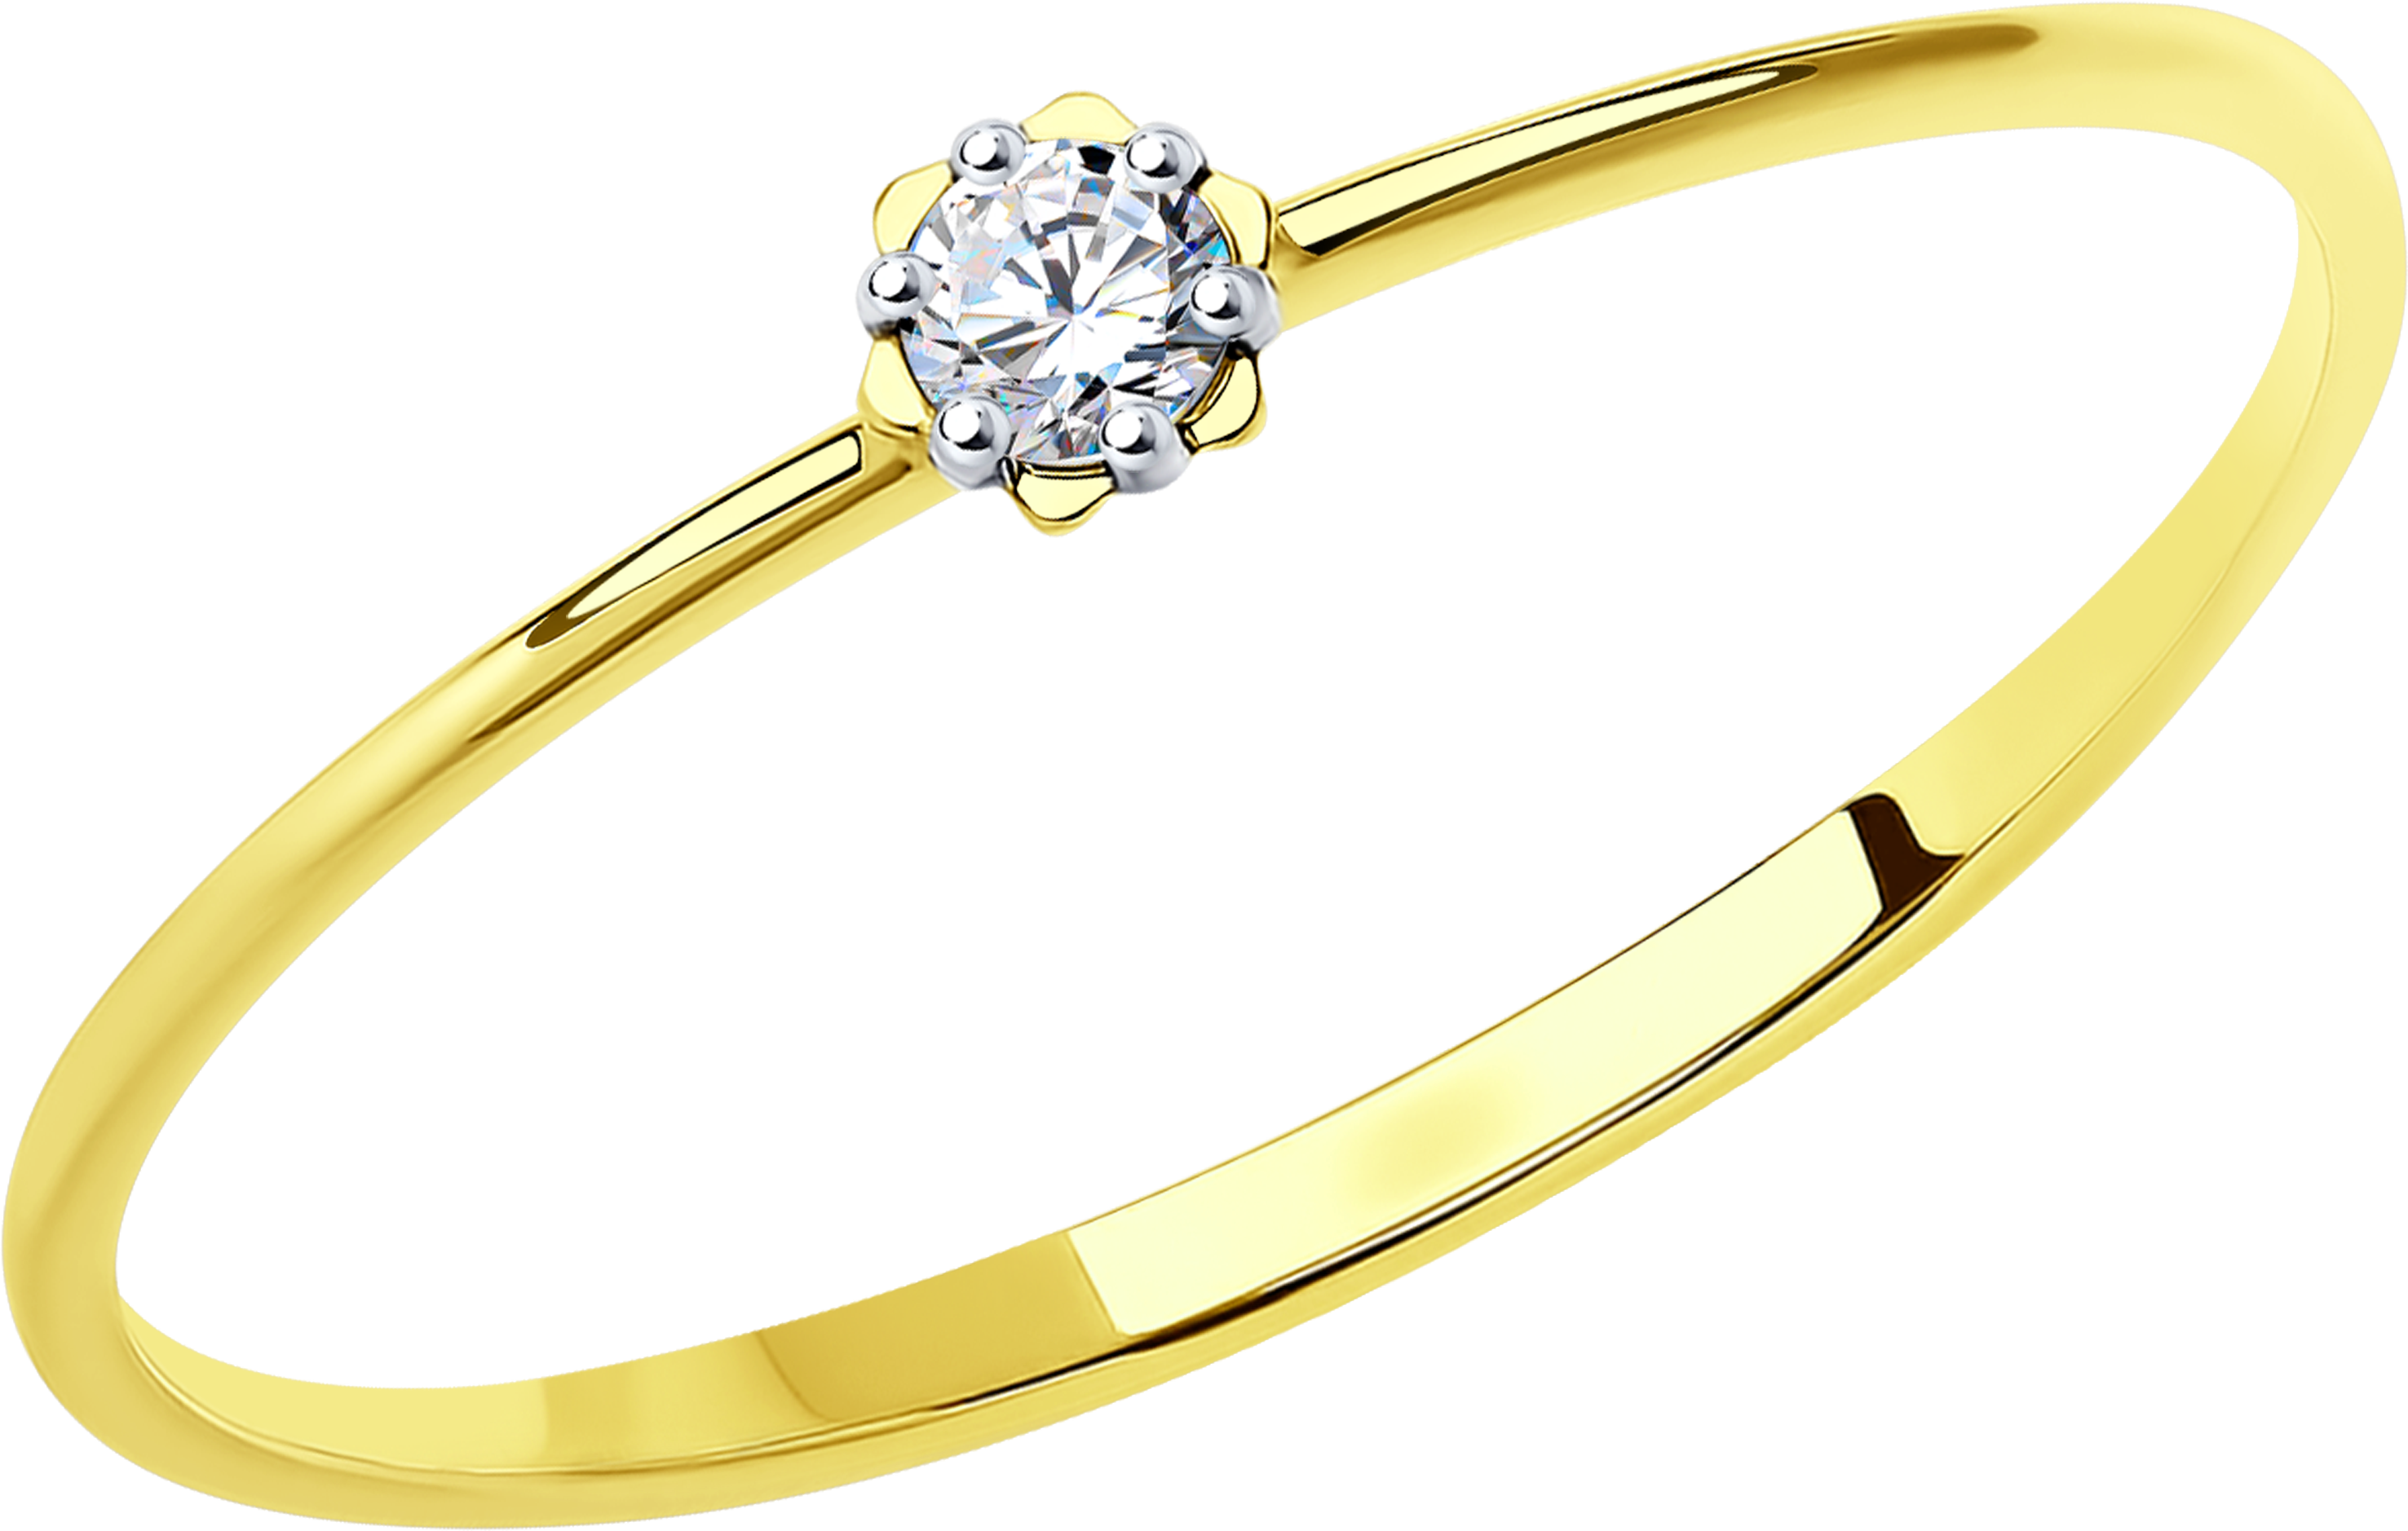 Кольцо SOKOLOV из желтого золота с фианитом